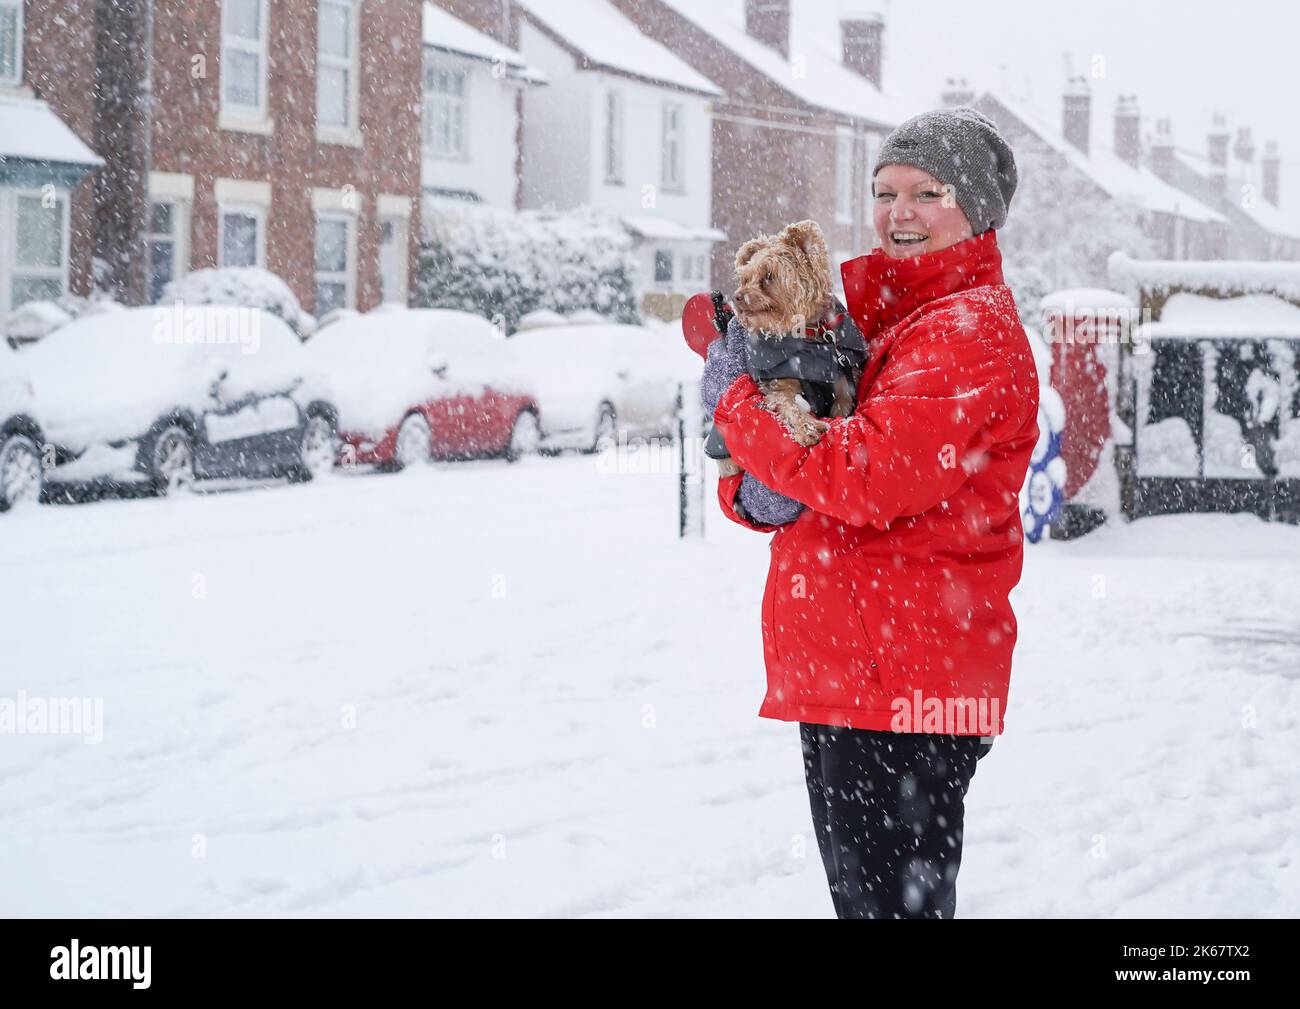 Femme souriante dans la neige épaisse, portant un manteau rouge, tenant son chien dans ses bras sur le côté d'une route pendant qu'il neige. Banque D'Images